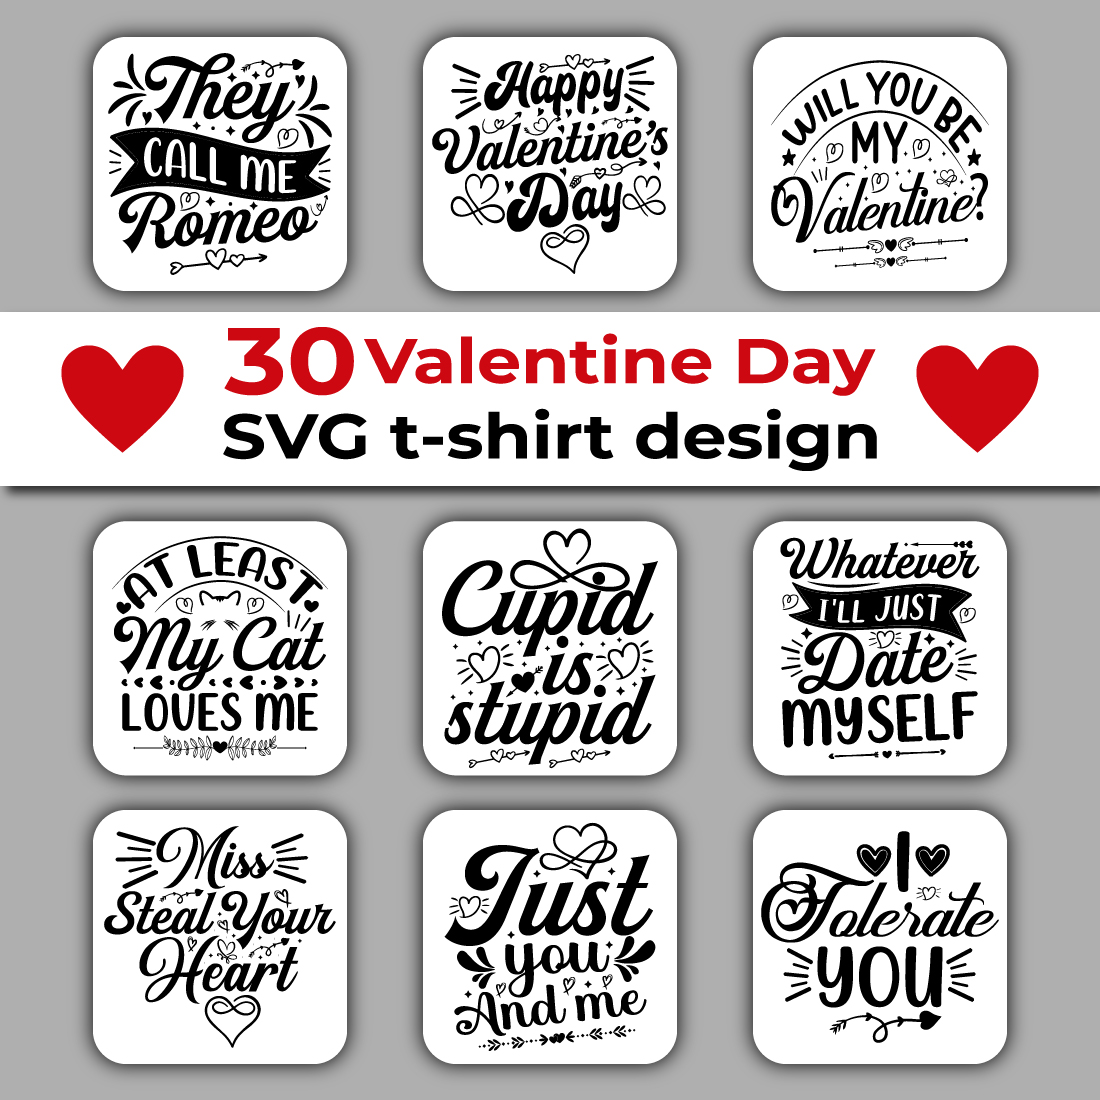 Valentine's Day SVG T-shirt Design Bundle cover image.